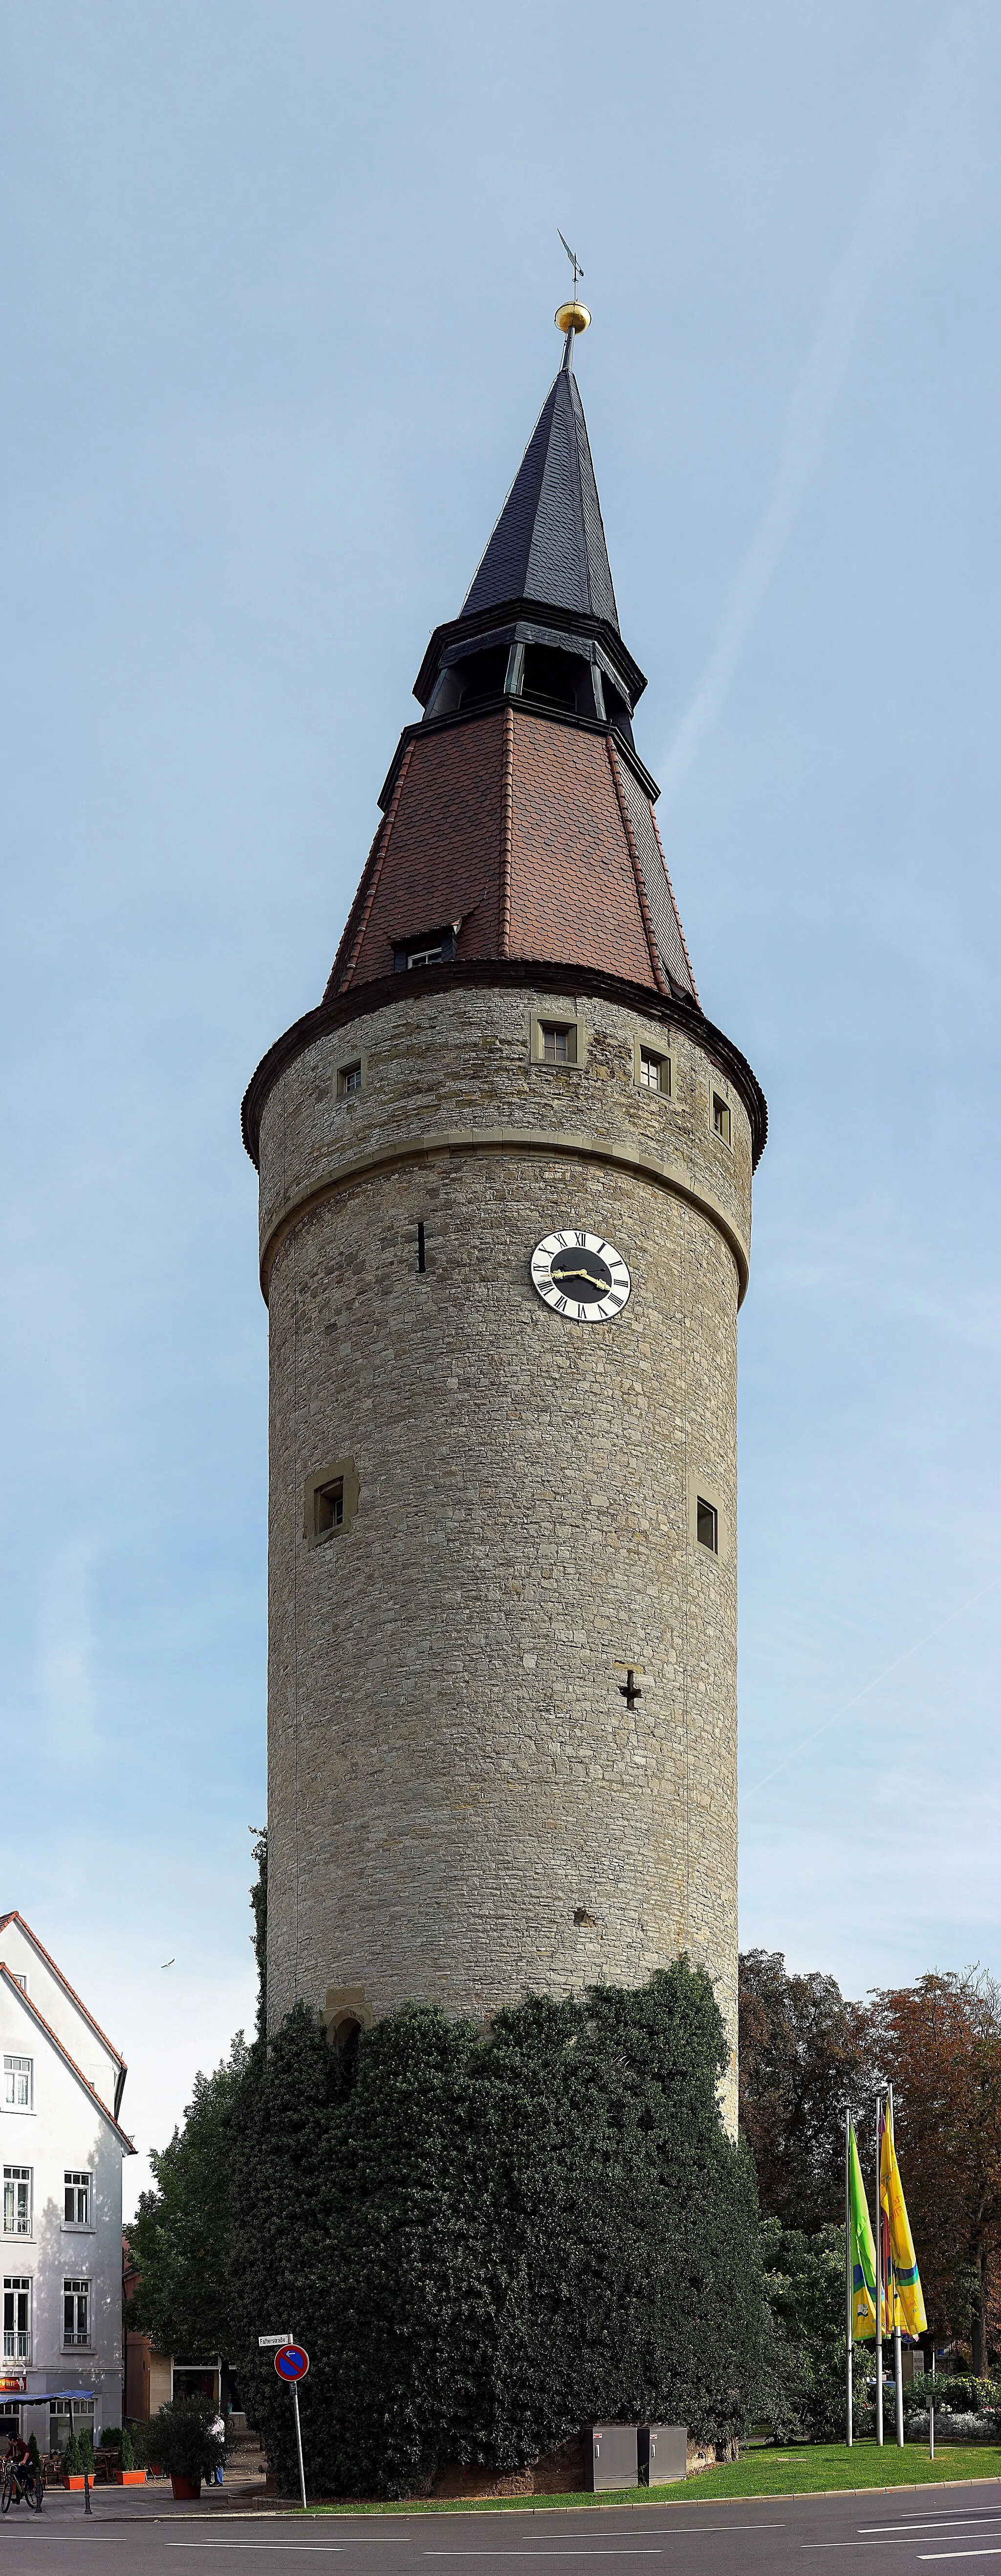 Photo showing: Der zwischen 1469 und 1496 errichtete, 52 Meter hoher Falterturm, beherbergt seit 1963 das Deutsche Fastnachtmuseum. Der Turm diente früher als Befestigungs- und Wachturm der äußeren Stadtmauer von Kitzingen und ist heute als Baudenkmal geschützt. Aufgrund eines Absacken des Dachgebälks ist die Spitze zur Seite geneigt. Deswegen wird er auch als schiefer Turm von Kitzingen bezeichnet.